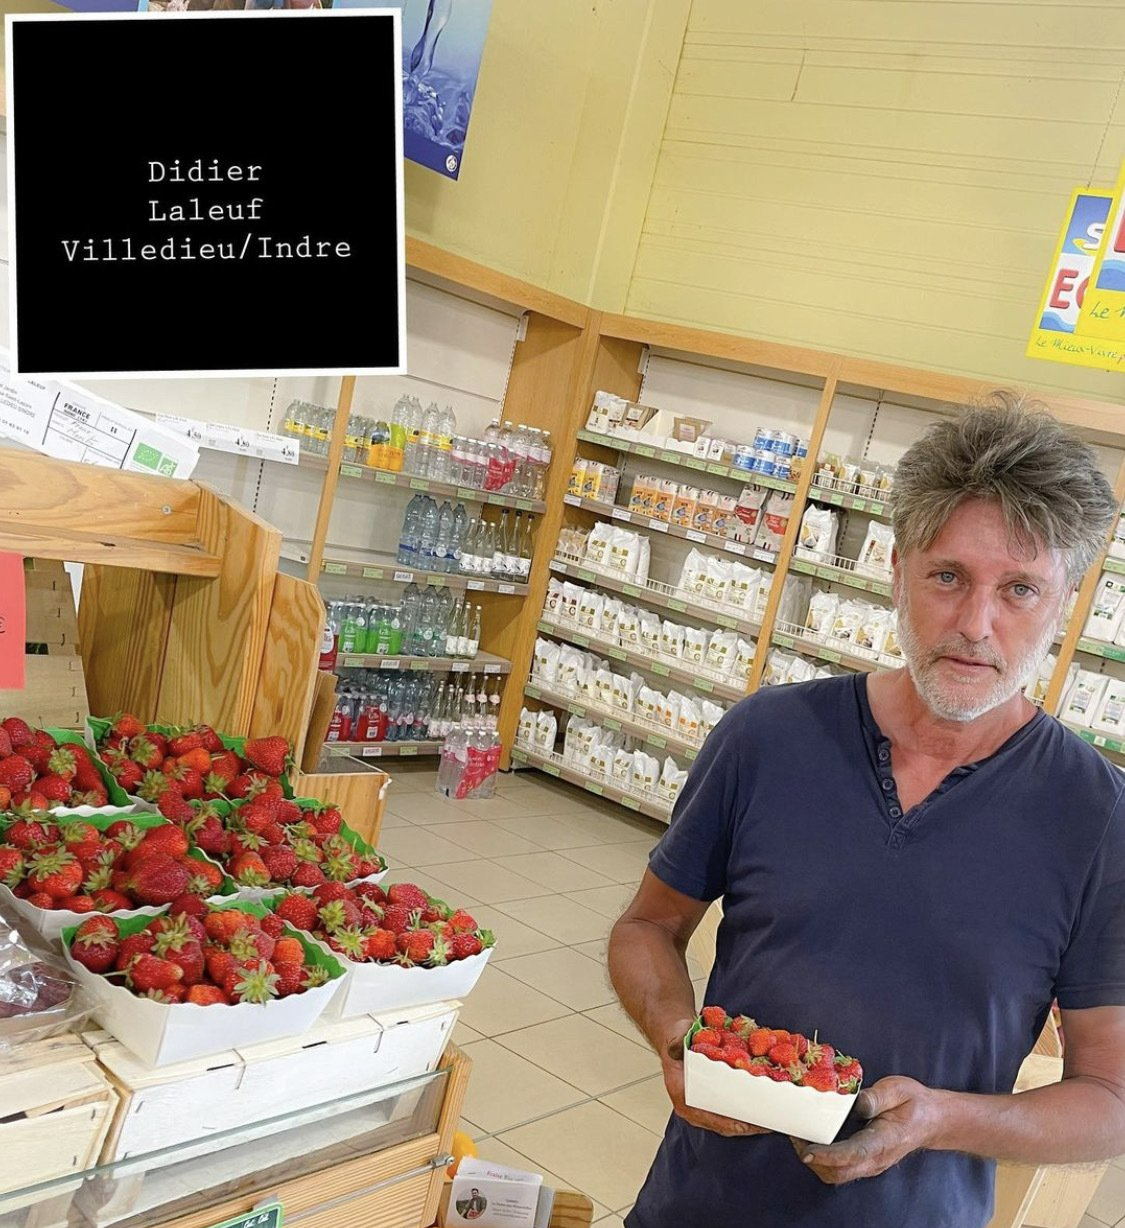 Didier producteur de fraise